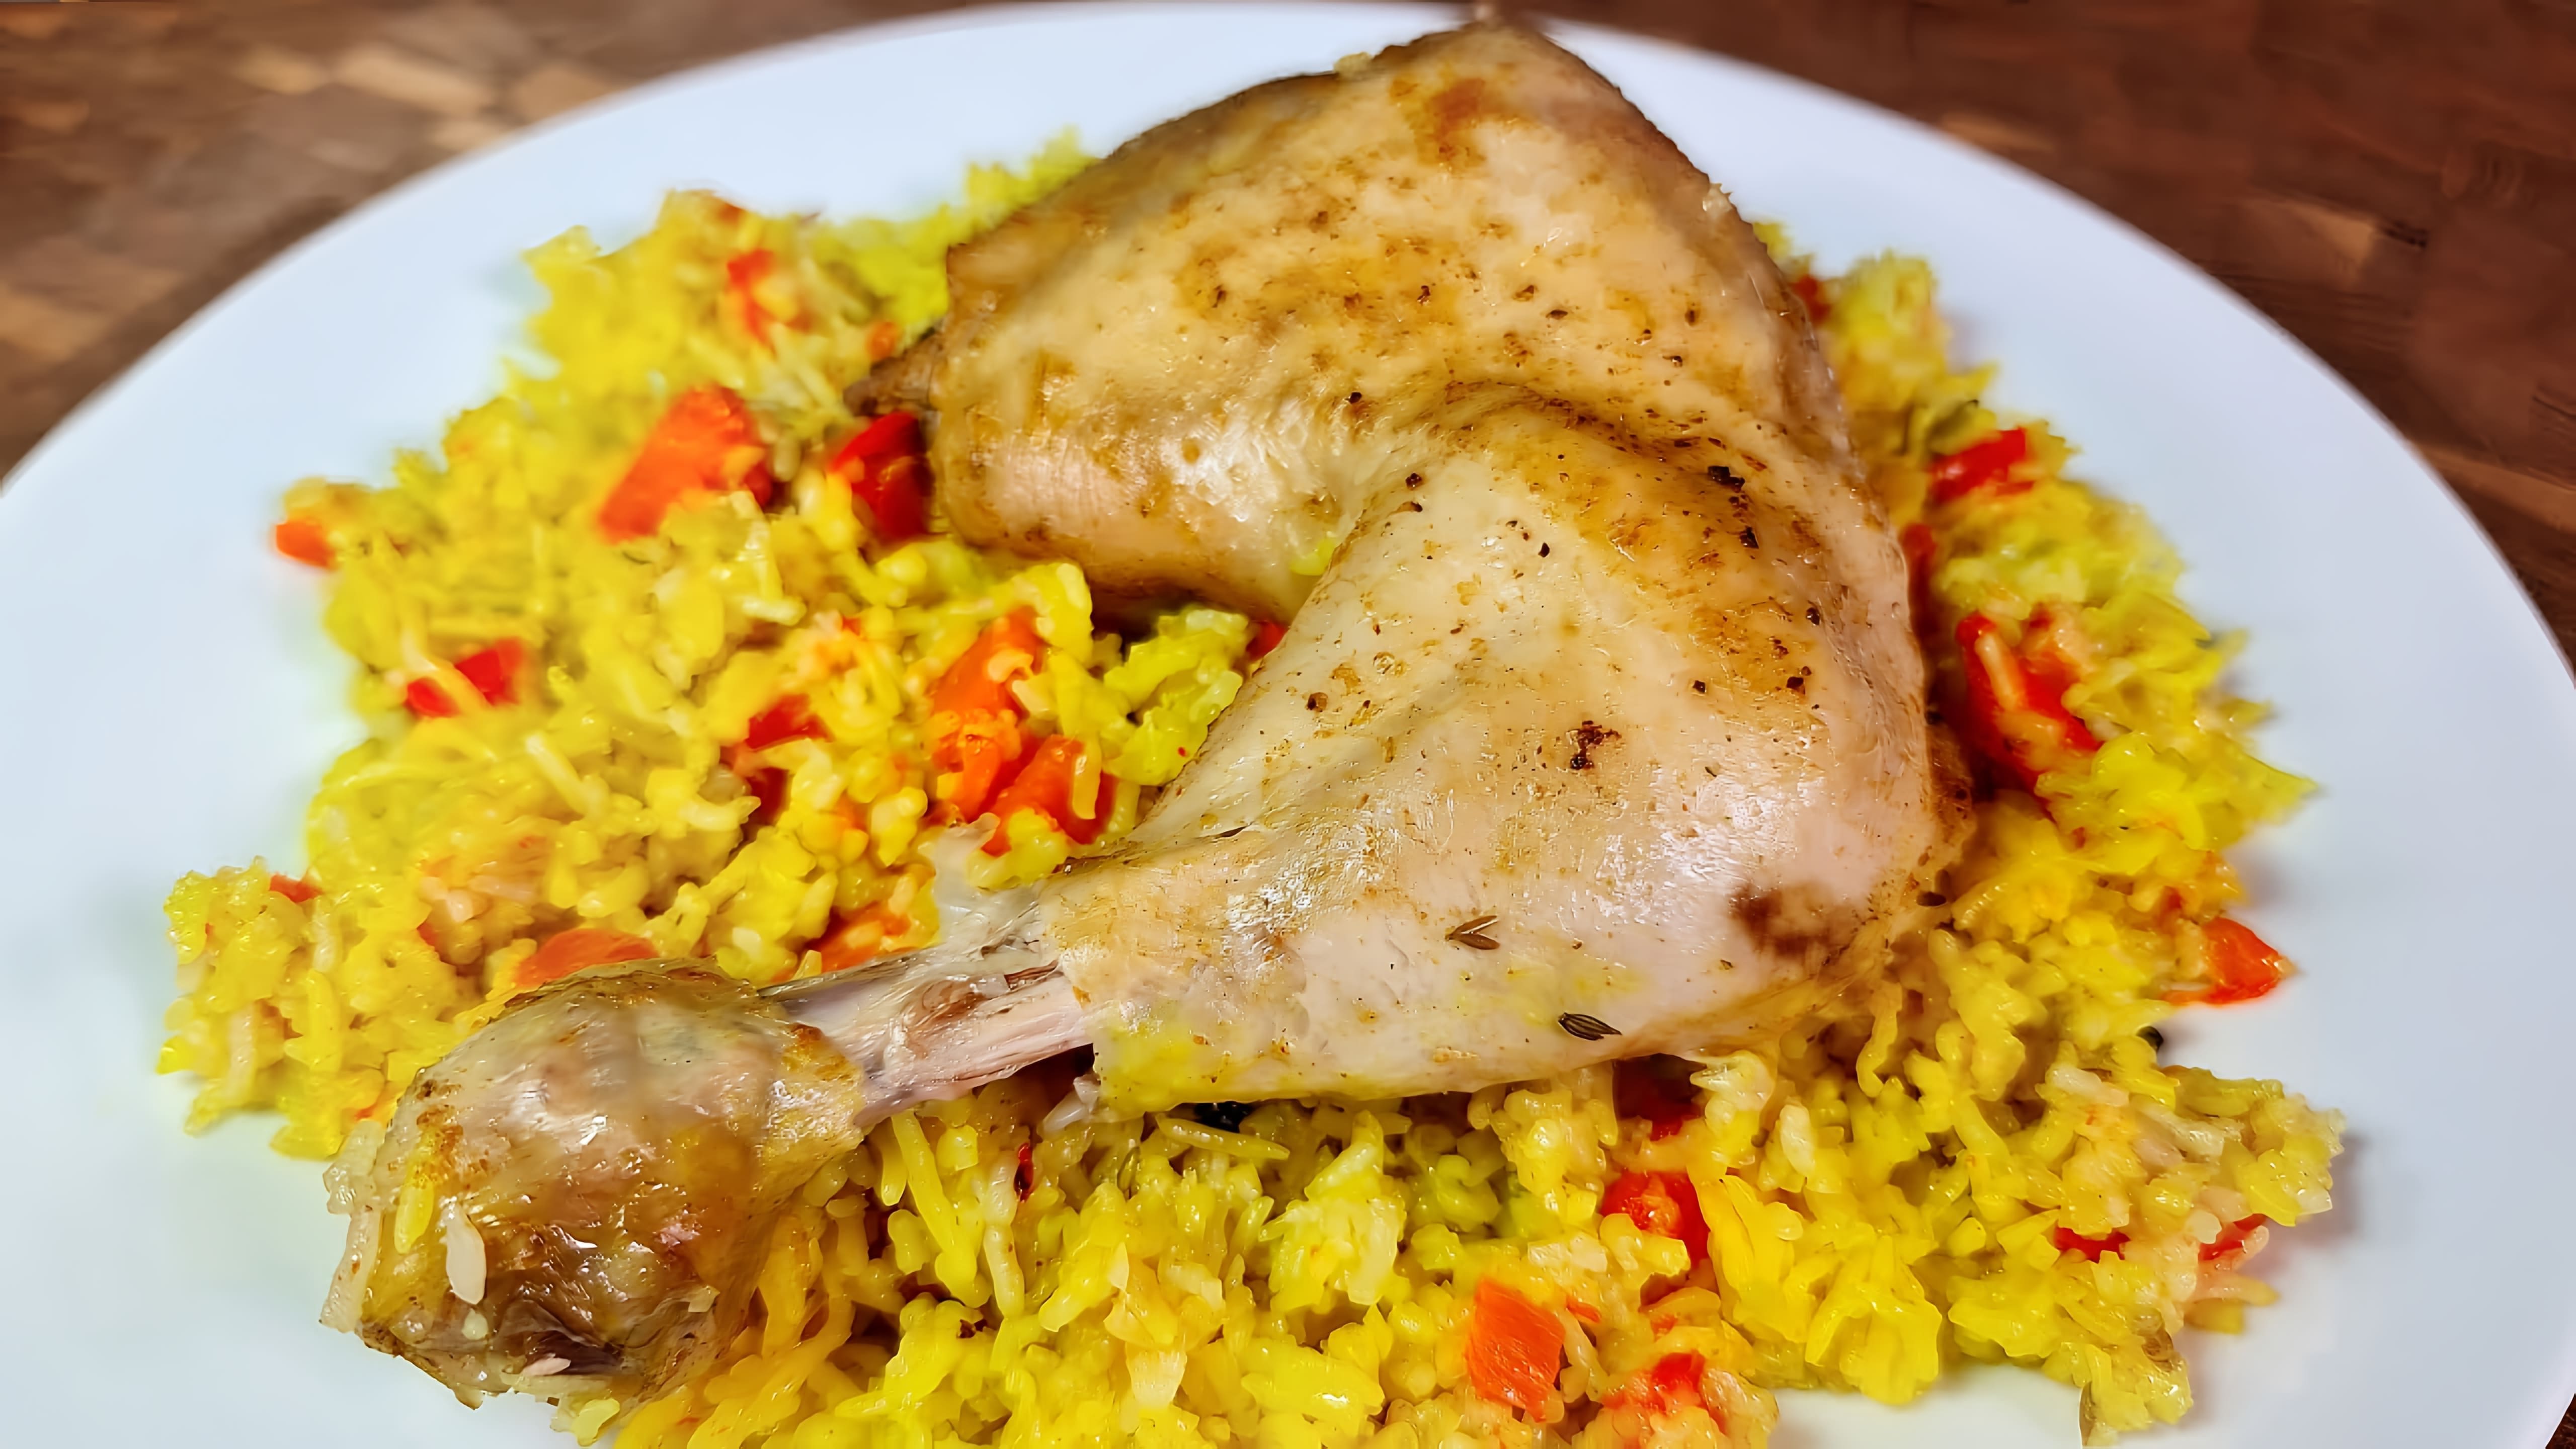 В этом видео демонстрируется процесс приготовления ужина из курицы, риса и овощей в рукаве в духовке